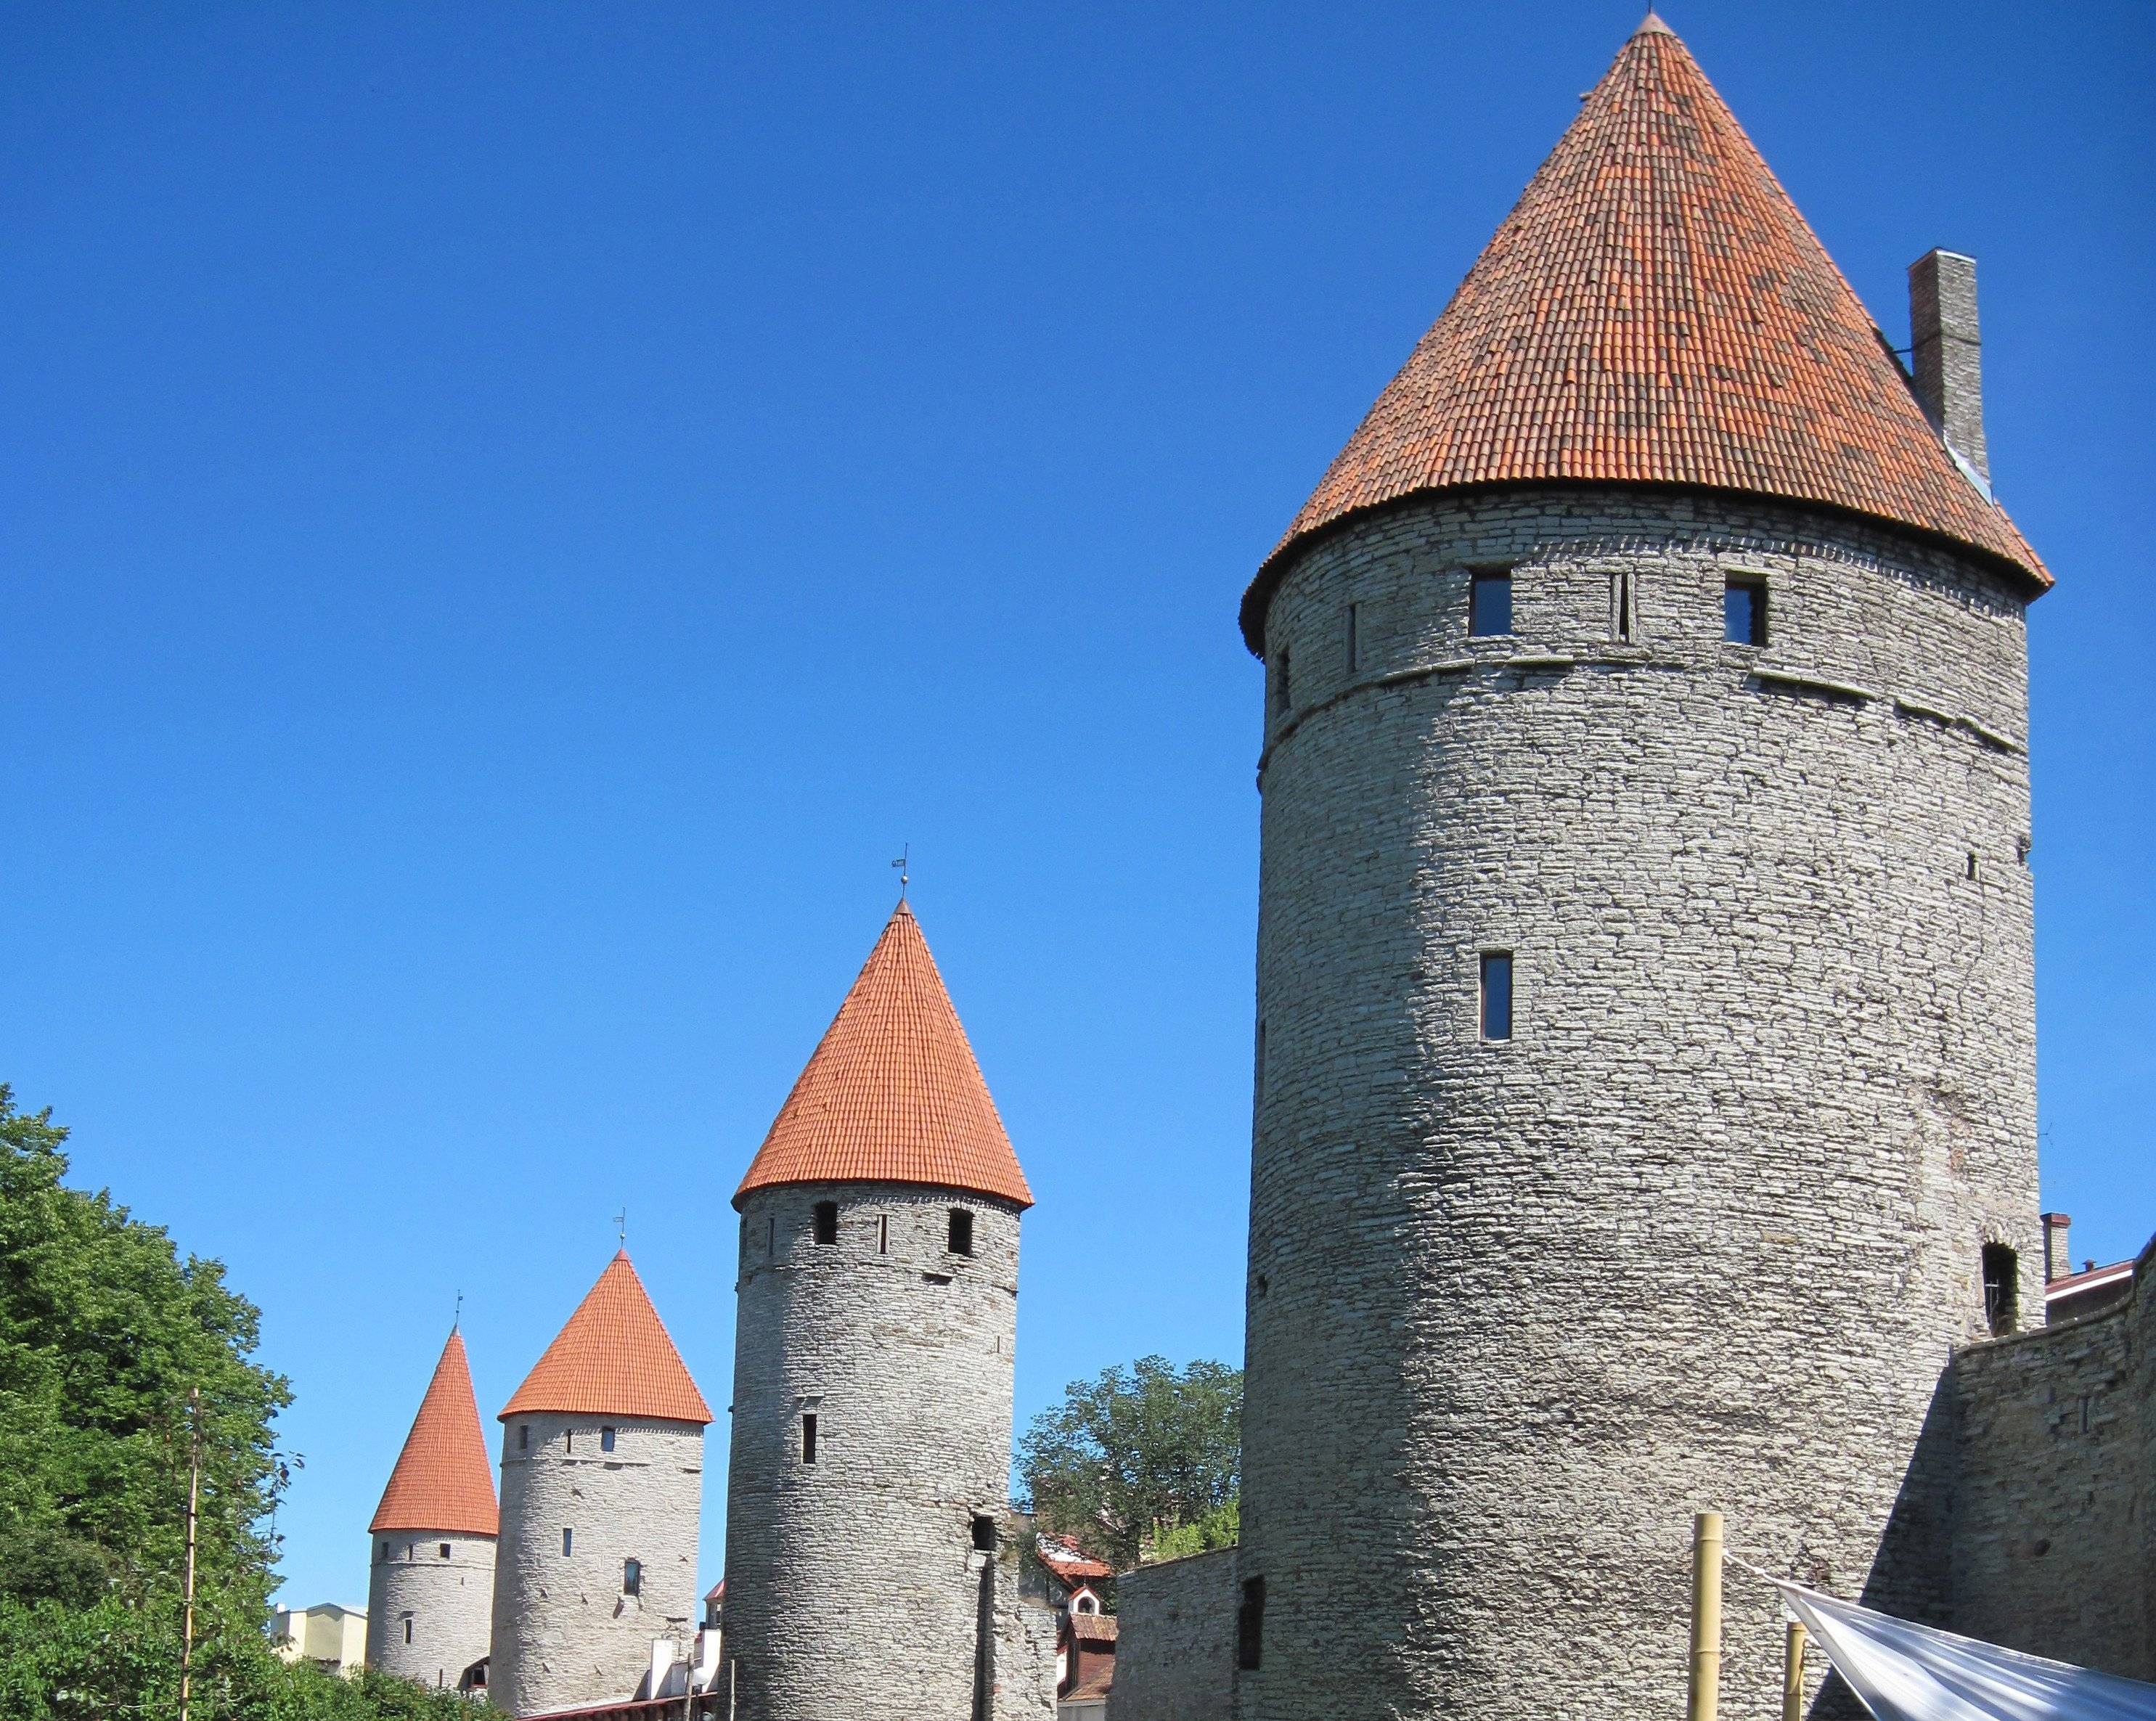 Découverte de Tallinn, la médiévale